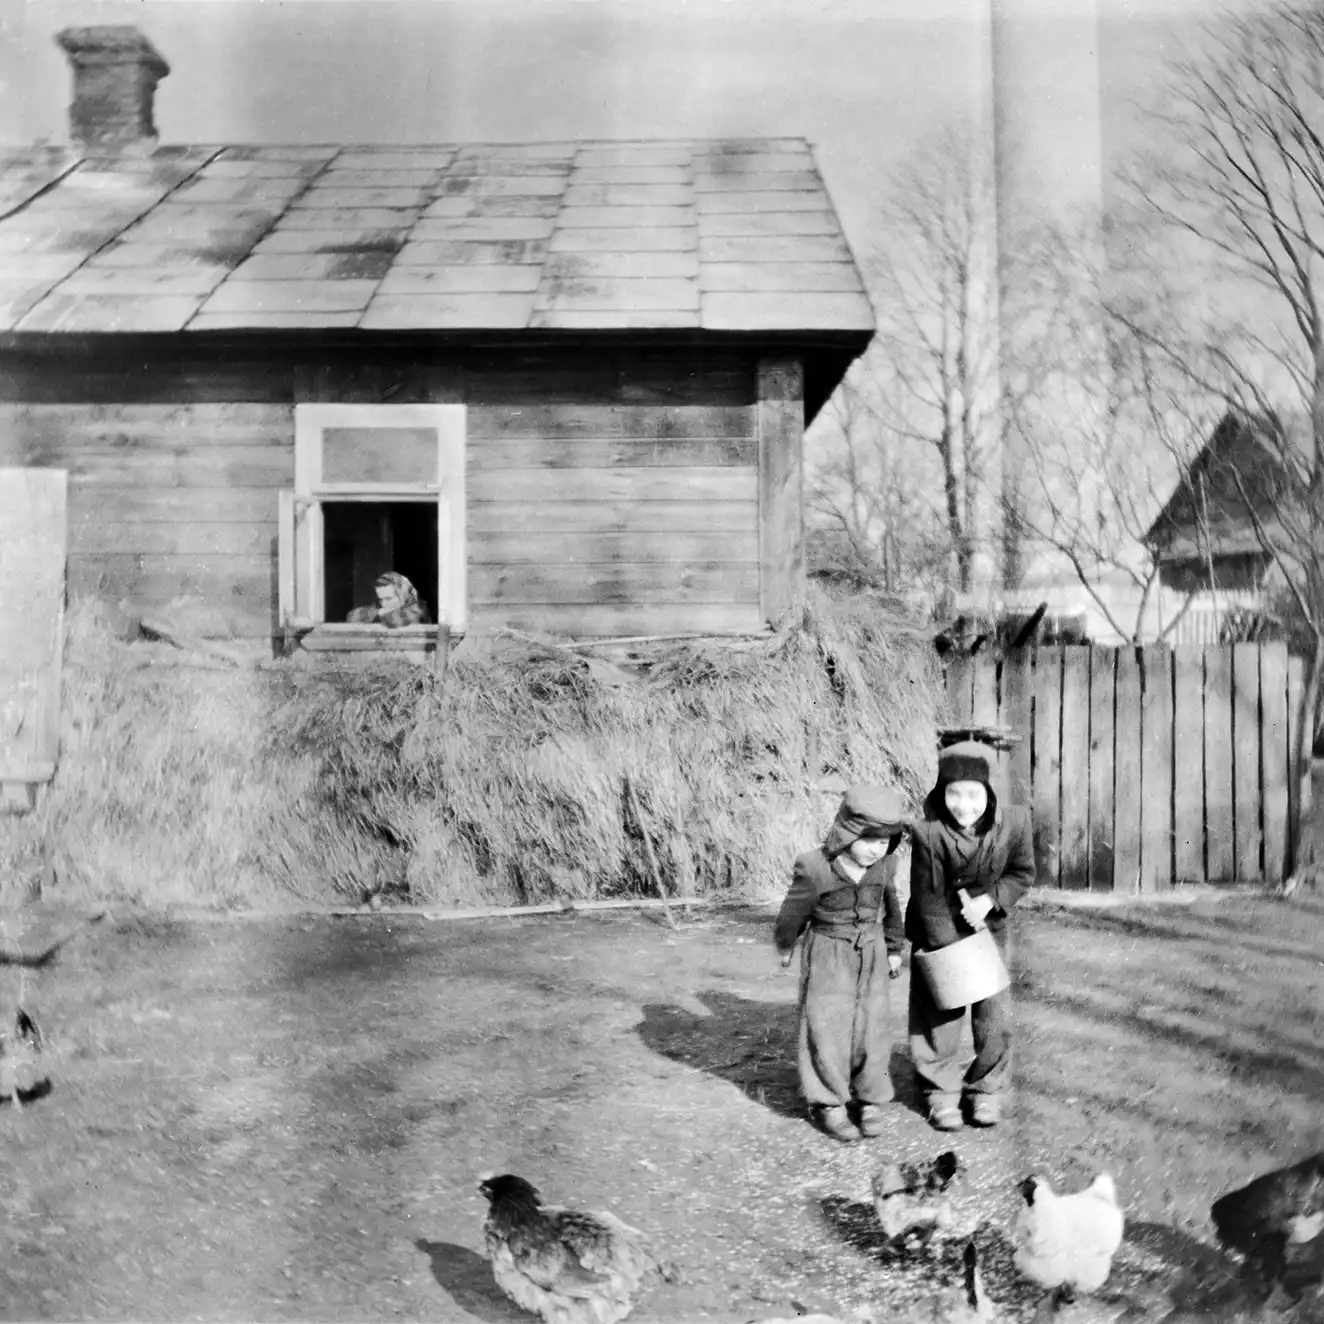 dwoje dzieci w kurtkach karmiące kury, za nimi drewniana parterowa chata obłożona do połowy sianem, z której okna wygląda kobieta w chuście